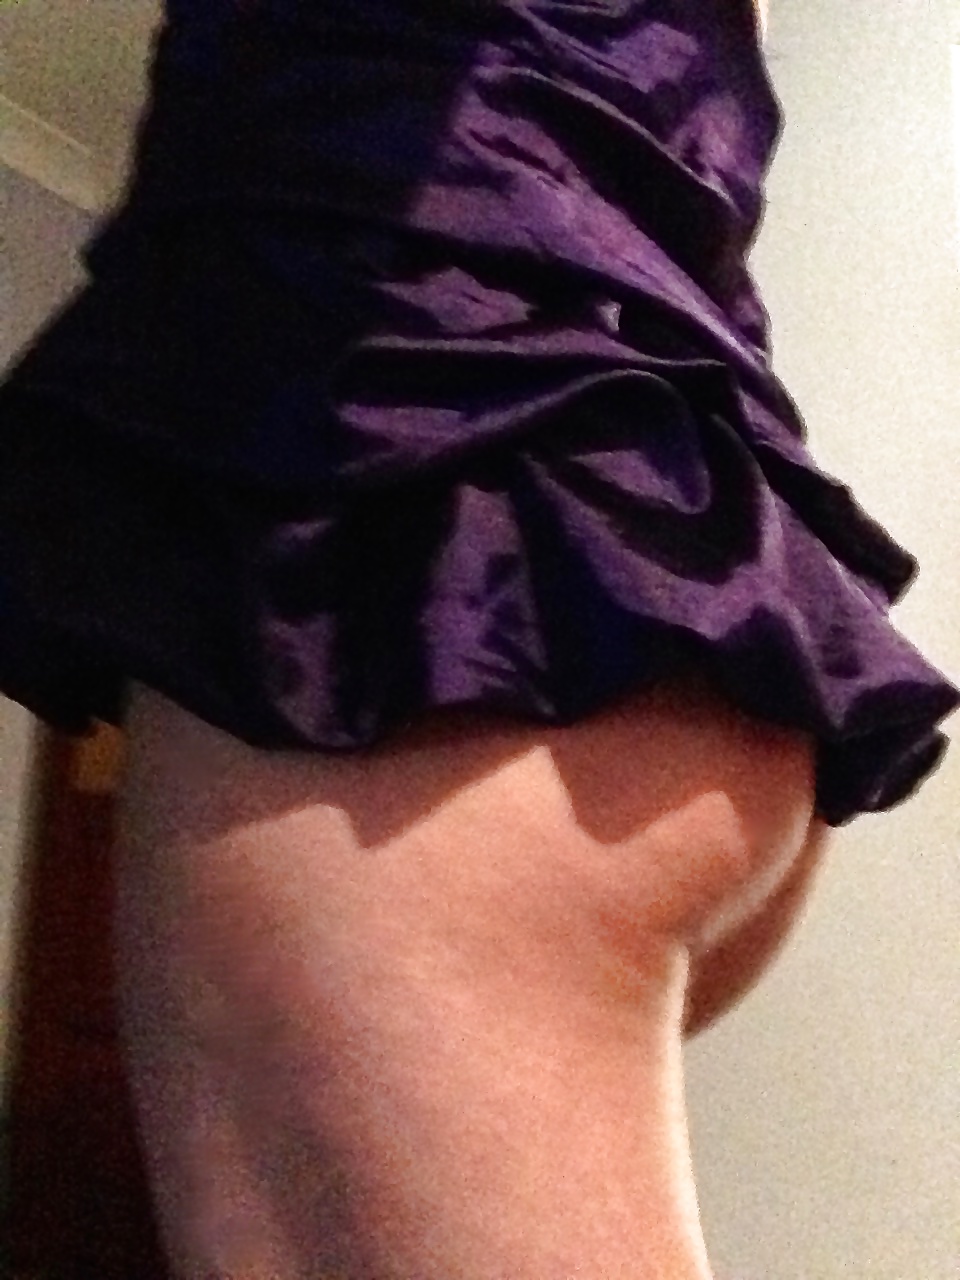 Super short purple dress curvy teen ass showing #41104217